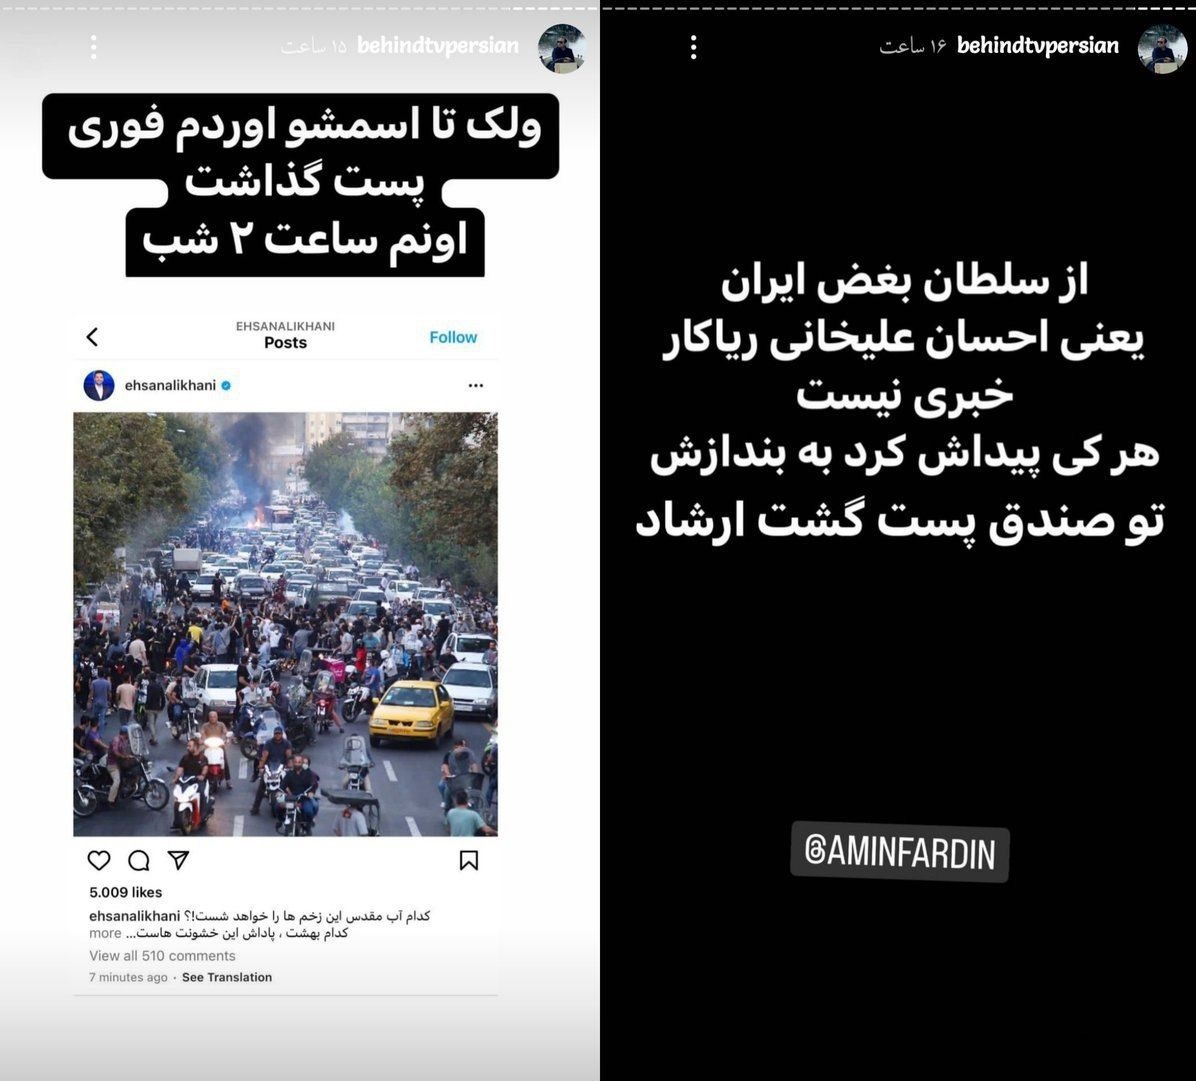 فارس: پس از اتفاقات اخیر، تعداد مخاطبان سینما در تهران در یک بازه مشابه زمانی، از ۱۴۷ هزار نفر به ۸۸ هزار نفر کاهش یافته / آثار هنرمندانی که کشف حجاب کرده‌اند، وارد حاشیه خواهد شد